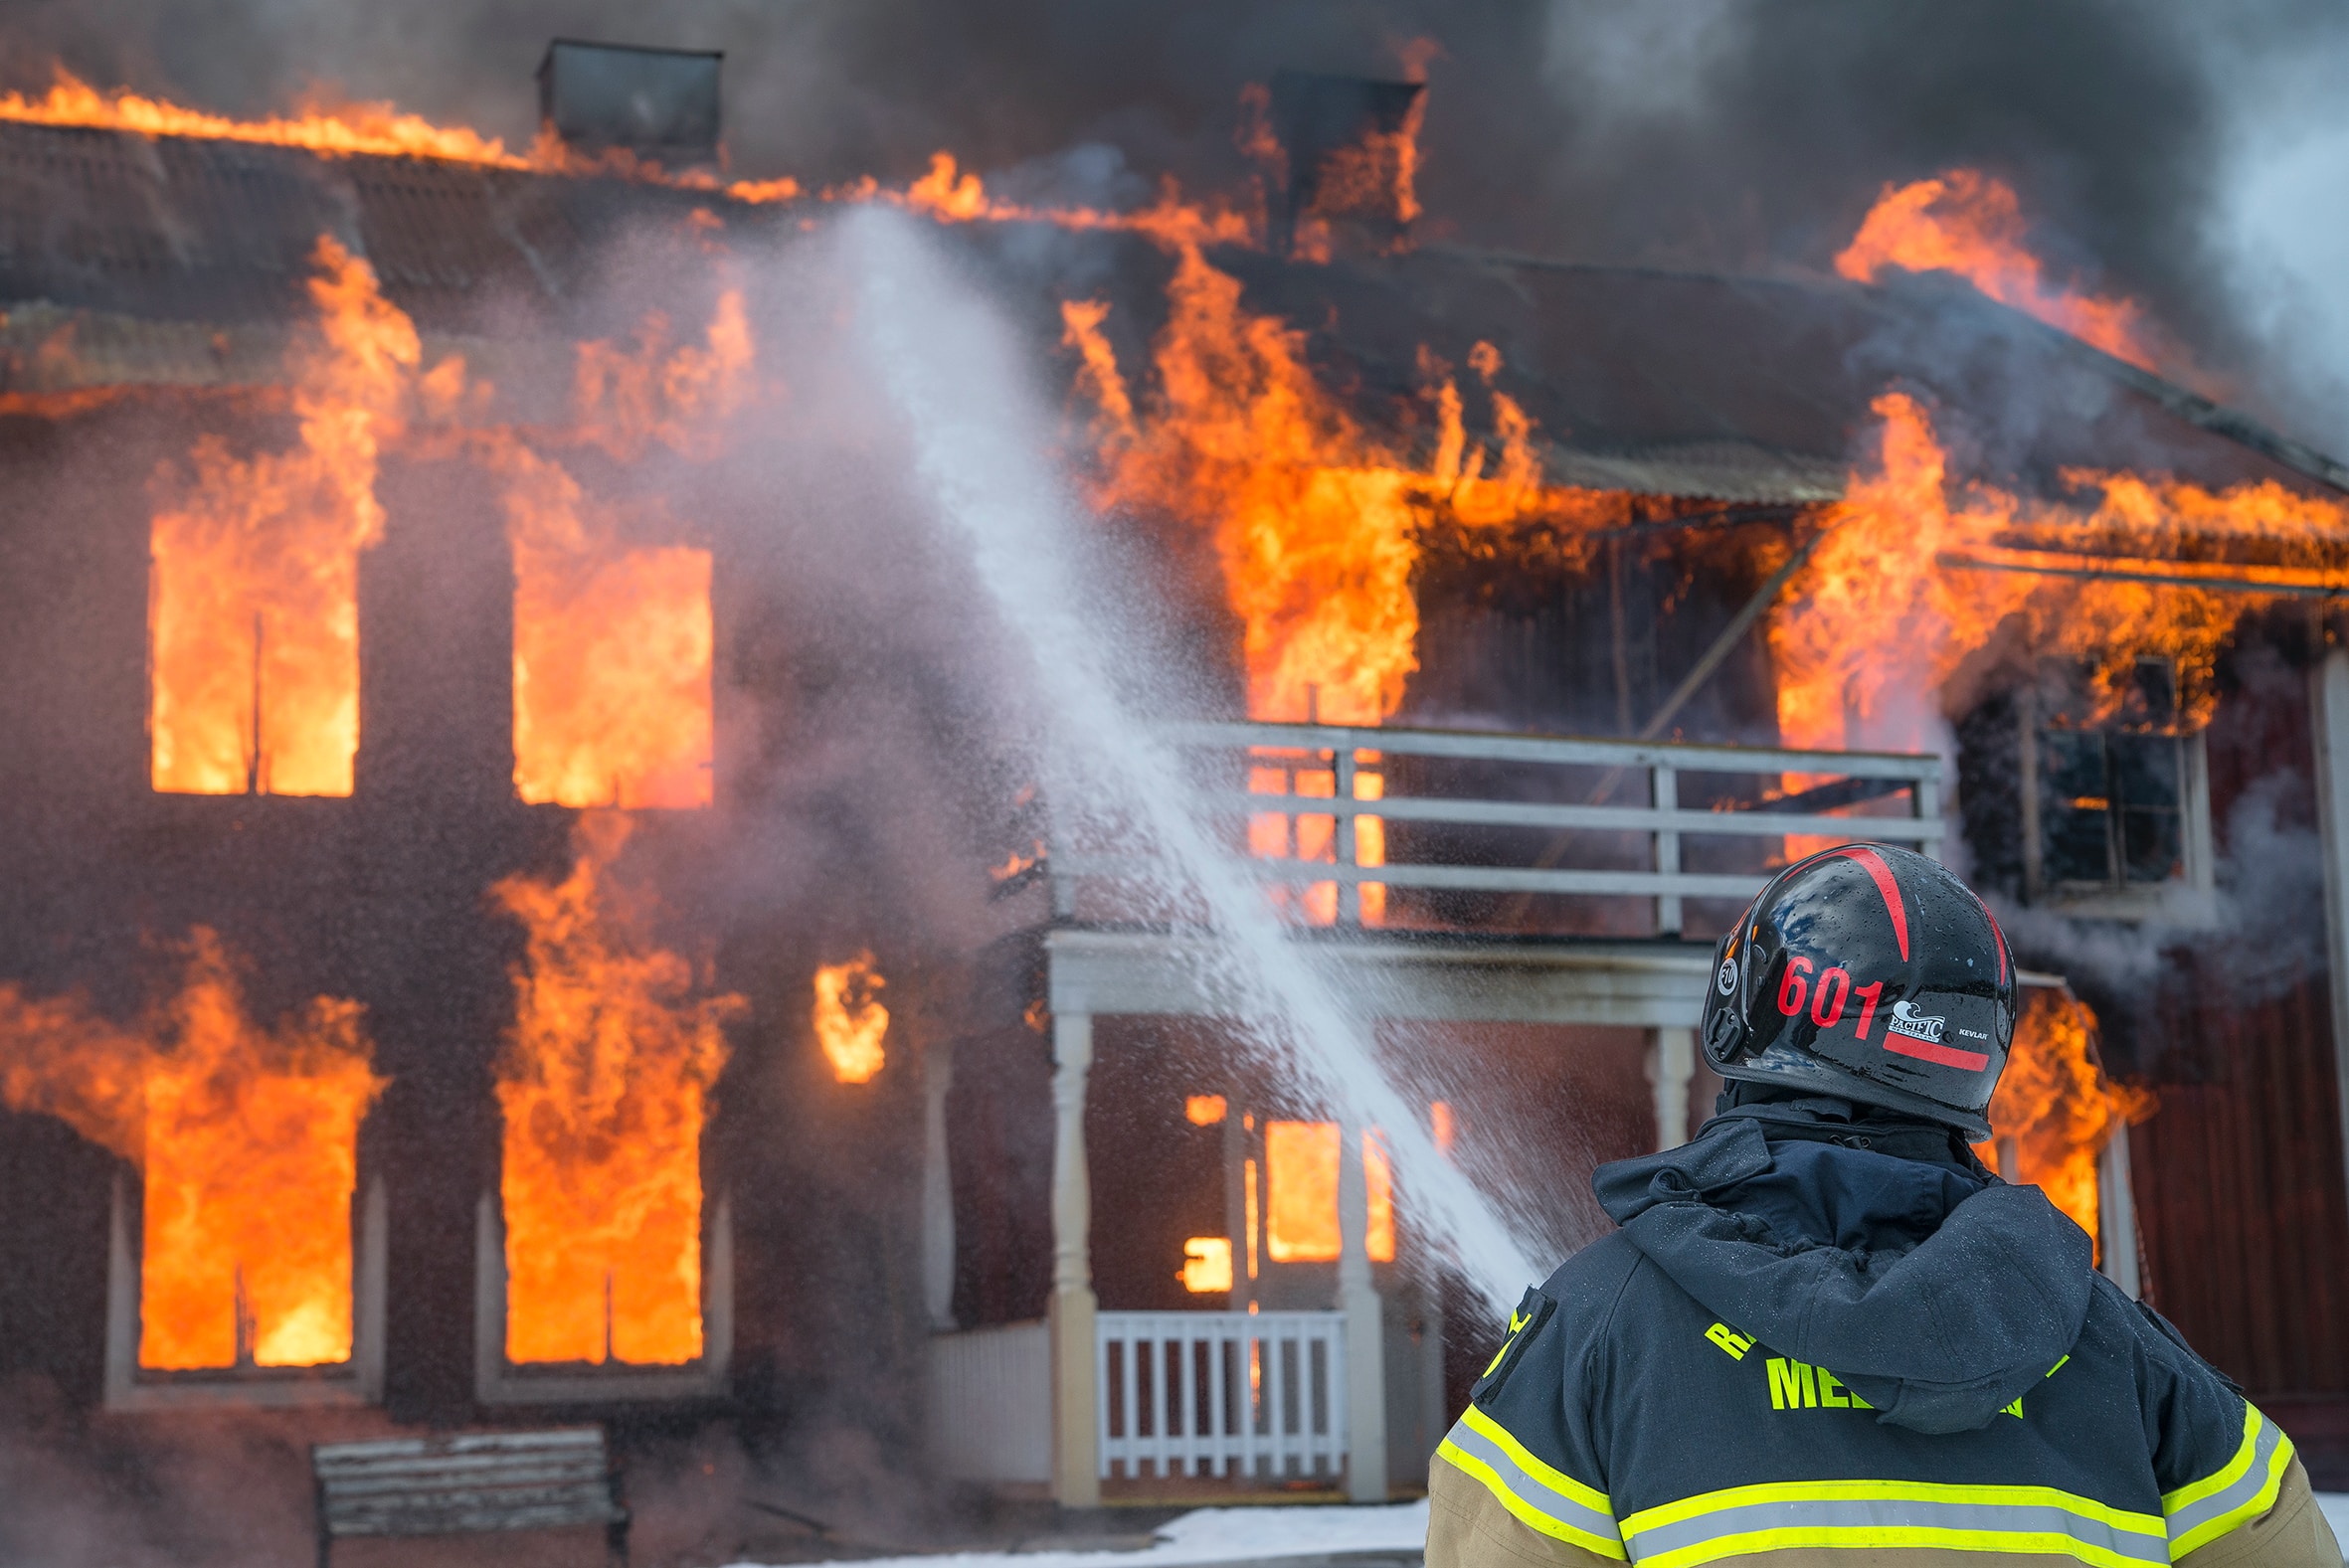  
Най малко 9 души загинаха при пожар във ваканционна къща във